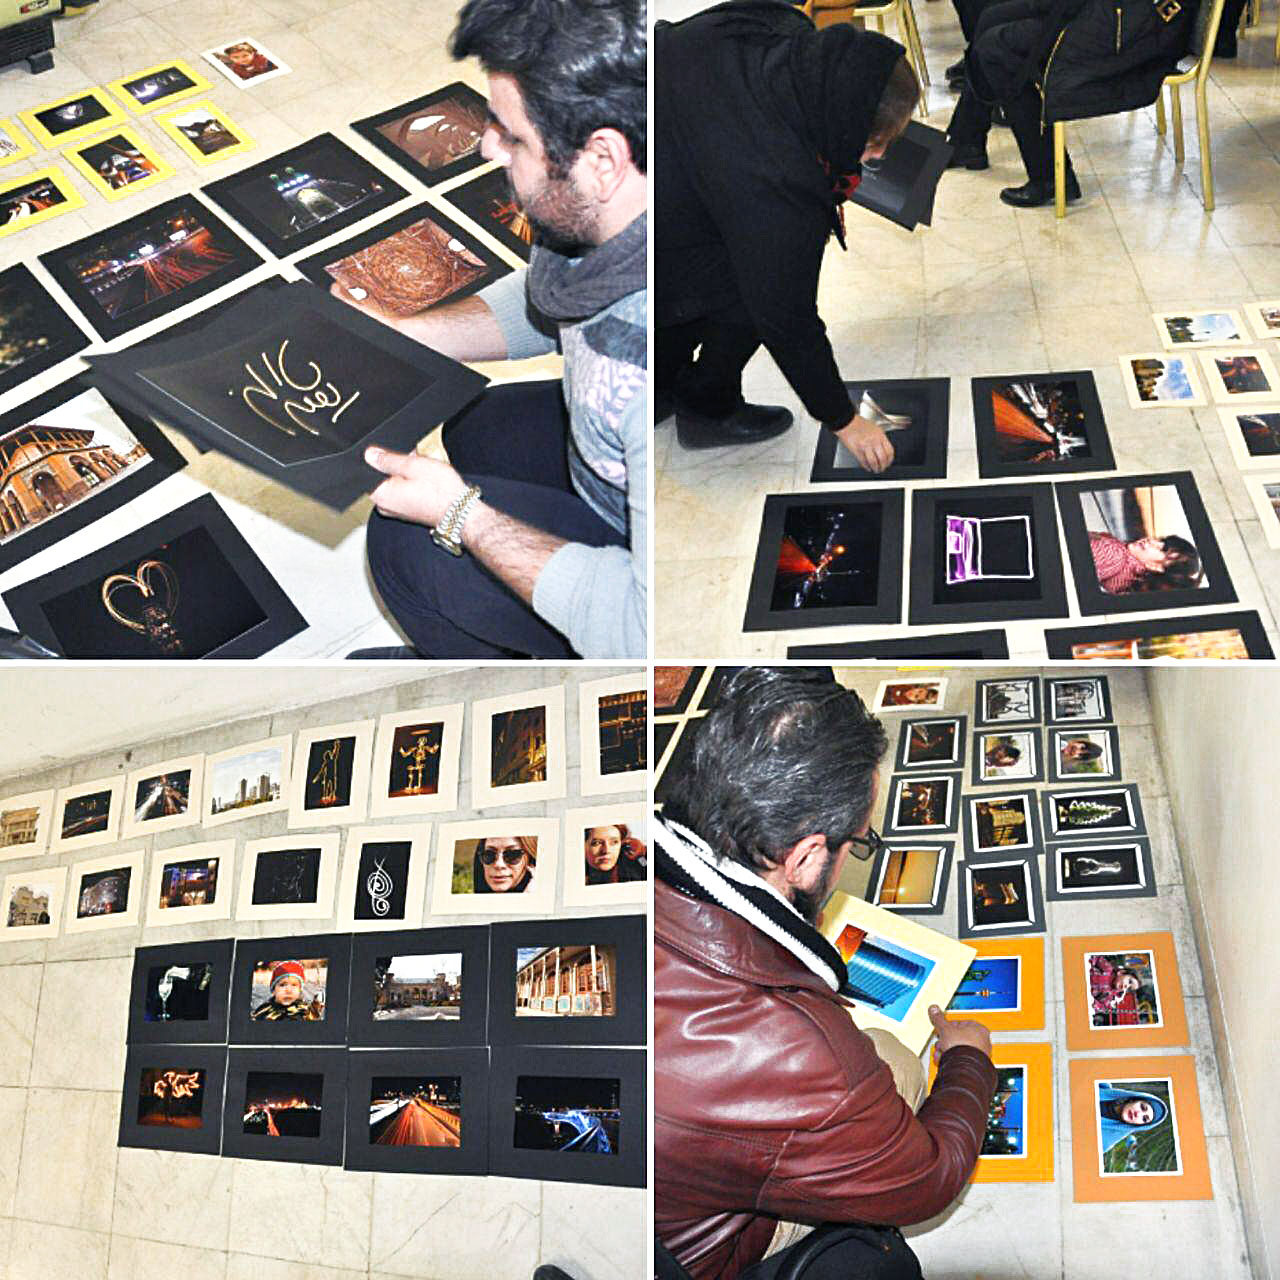 ژوژمان دوره اول کلاس آموزش عکاسی استاد نوری مقدم  کمیسیون آموزش اتحادیه عکاسان و فیلمبرداران تهران